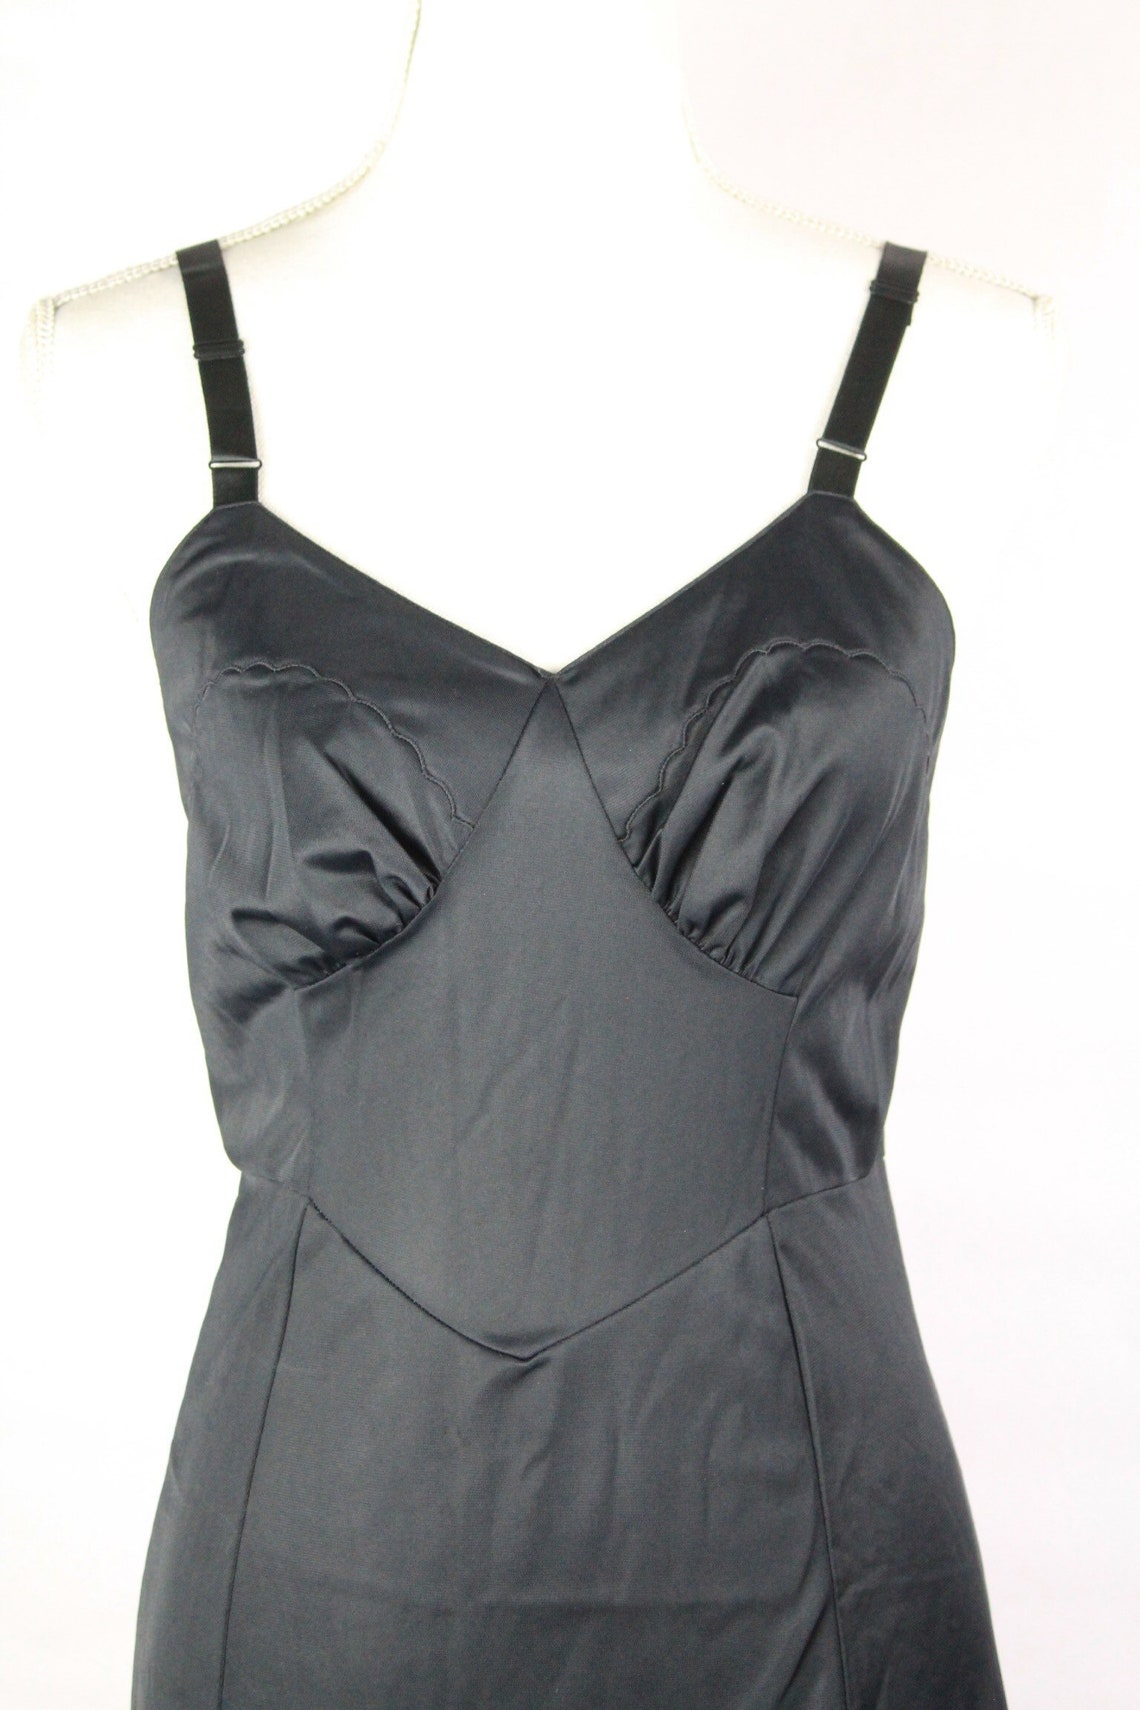 60's Black Nylon Slip Dress Lingerie Vintage Undergarments - Etsy UK